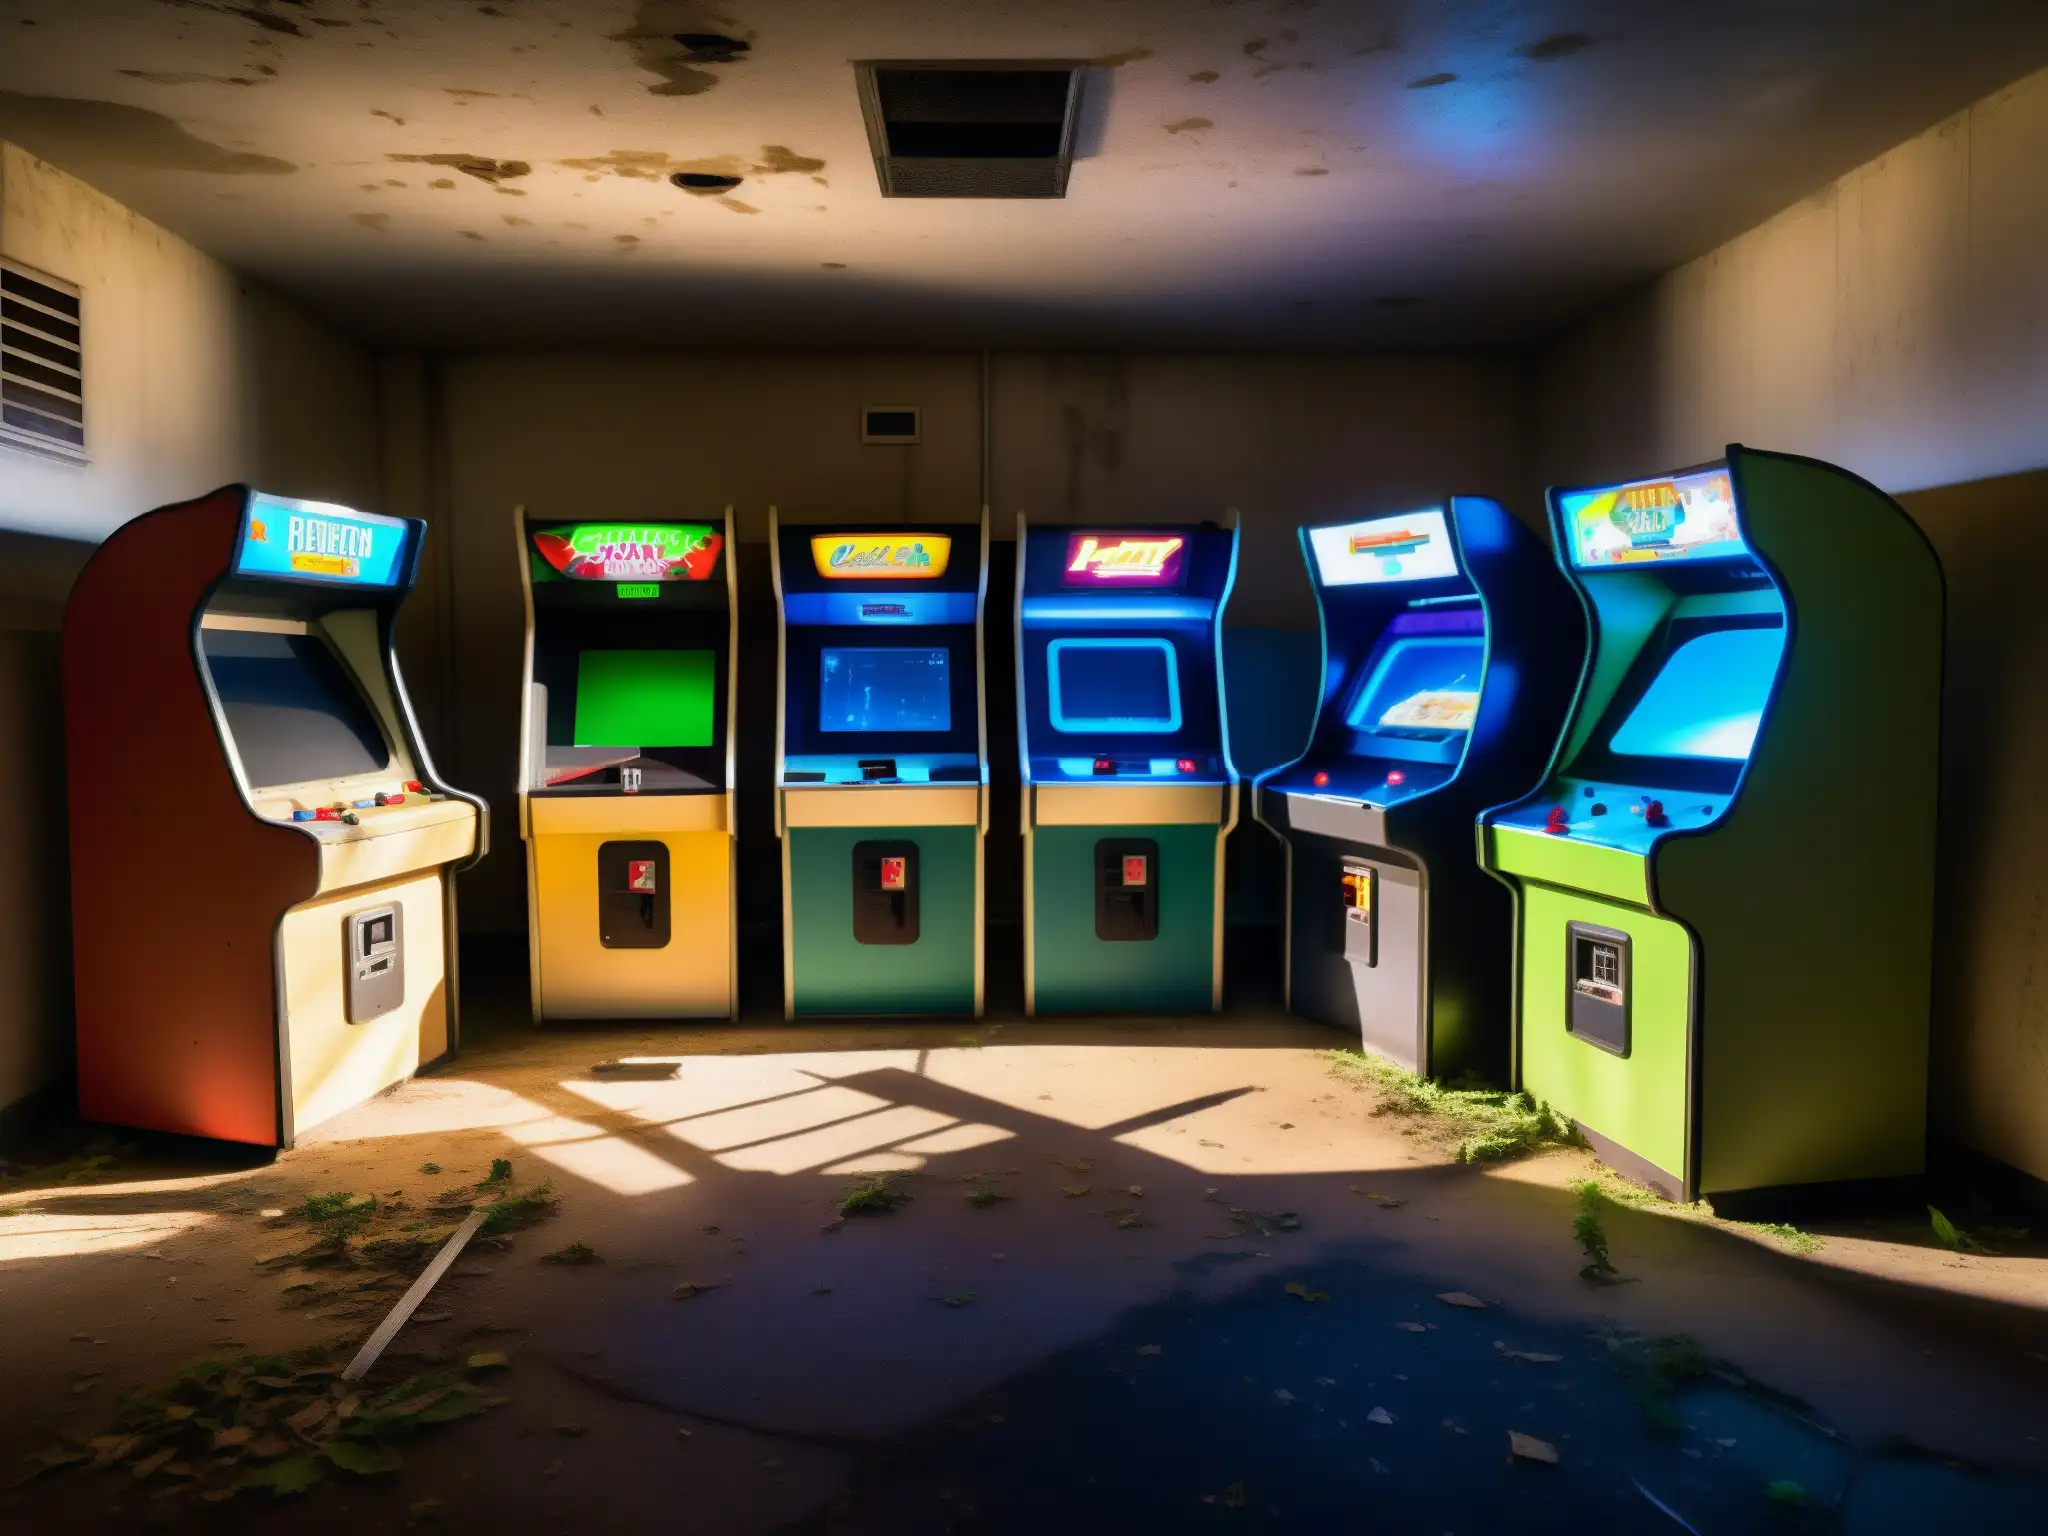 Un arcade abandonado con máquinas cubiertas de polvo y enredaderas, evocando leyendas urbanas de videojuegos abandonware